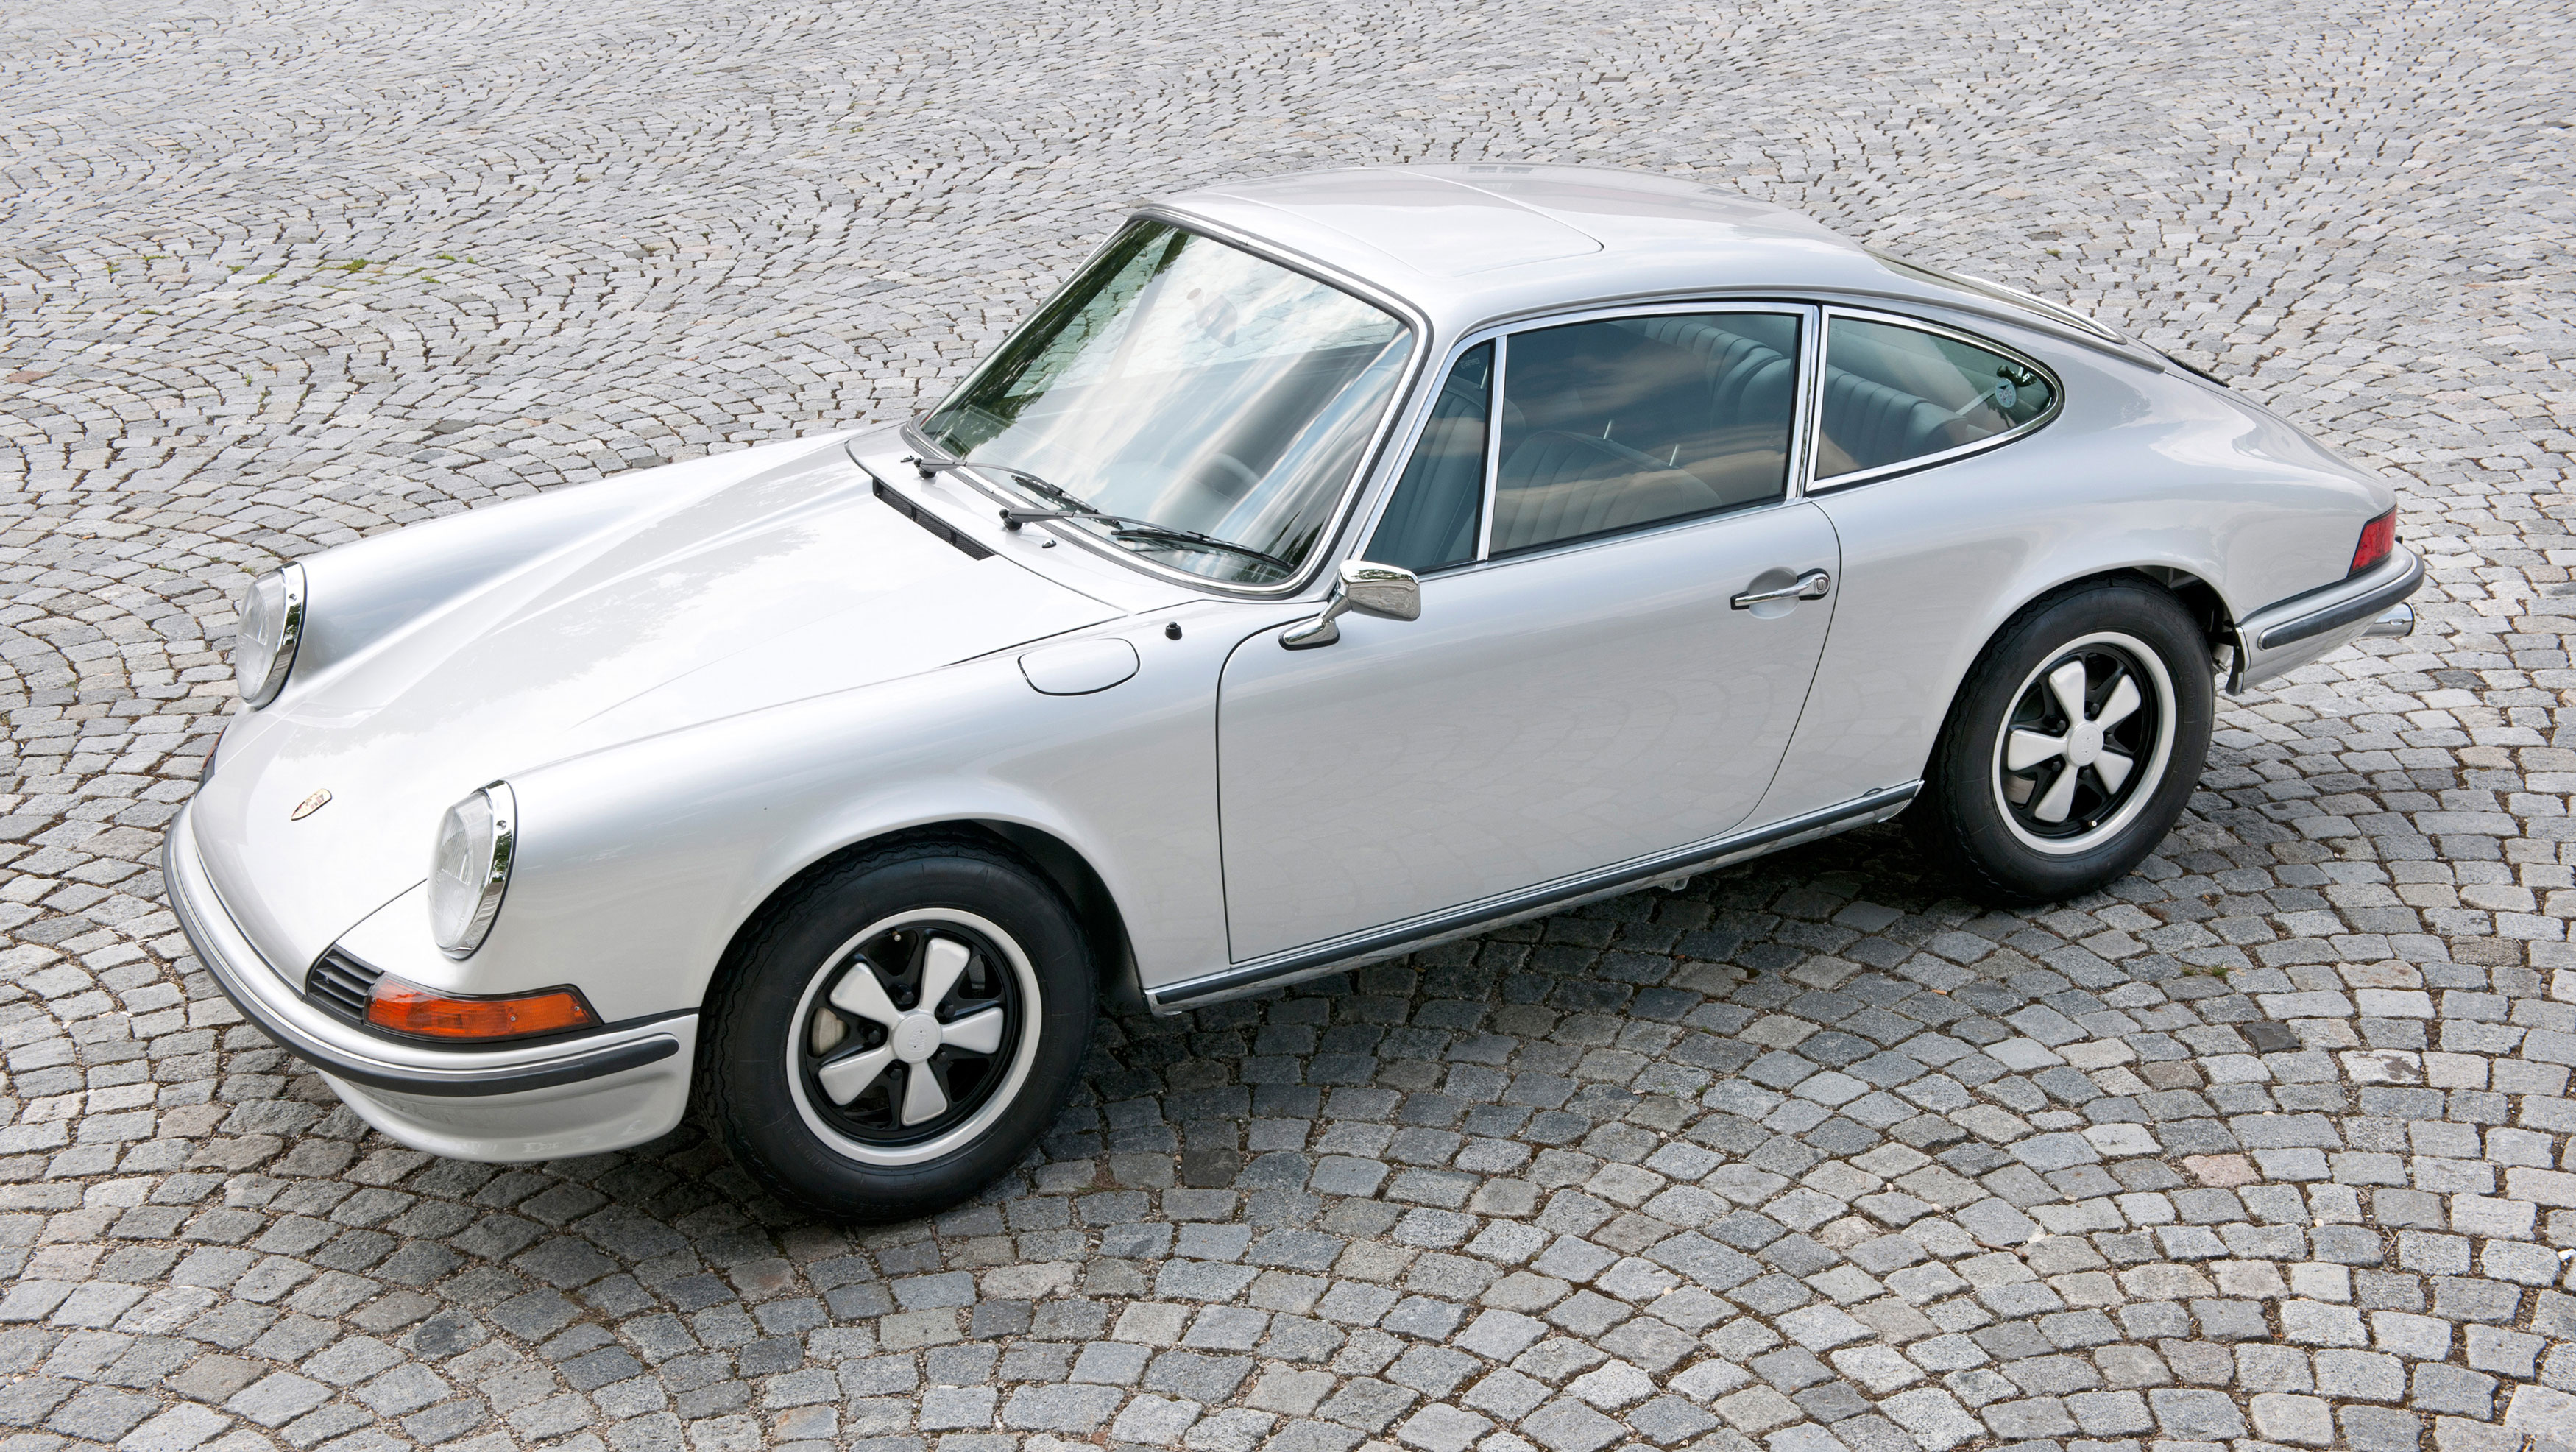 Original Porsche 911 in silver with Fuchs wheels